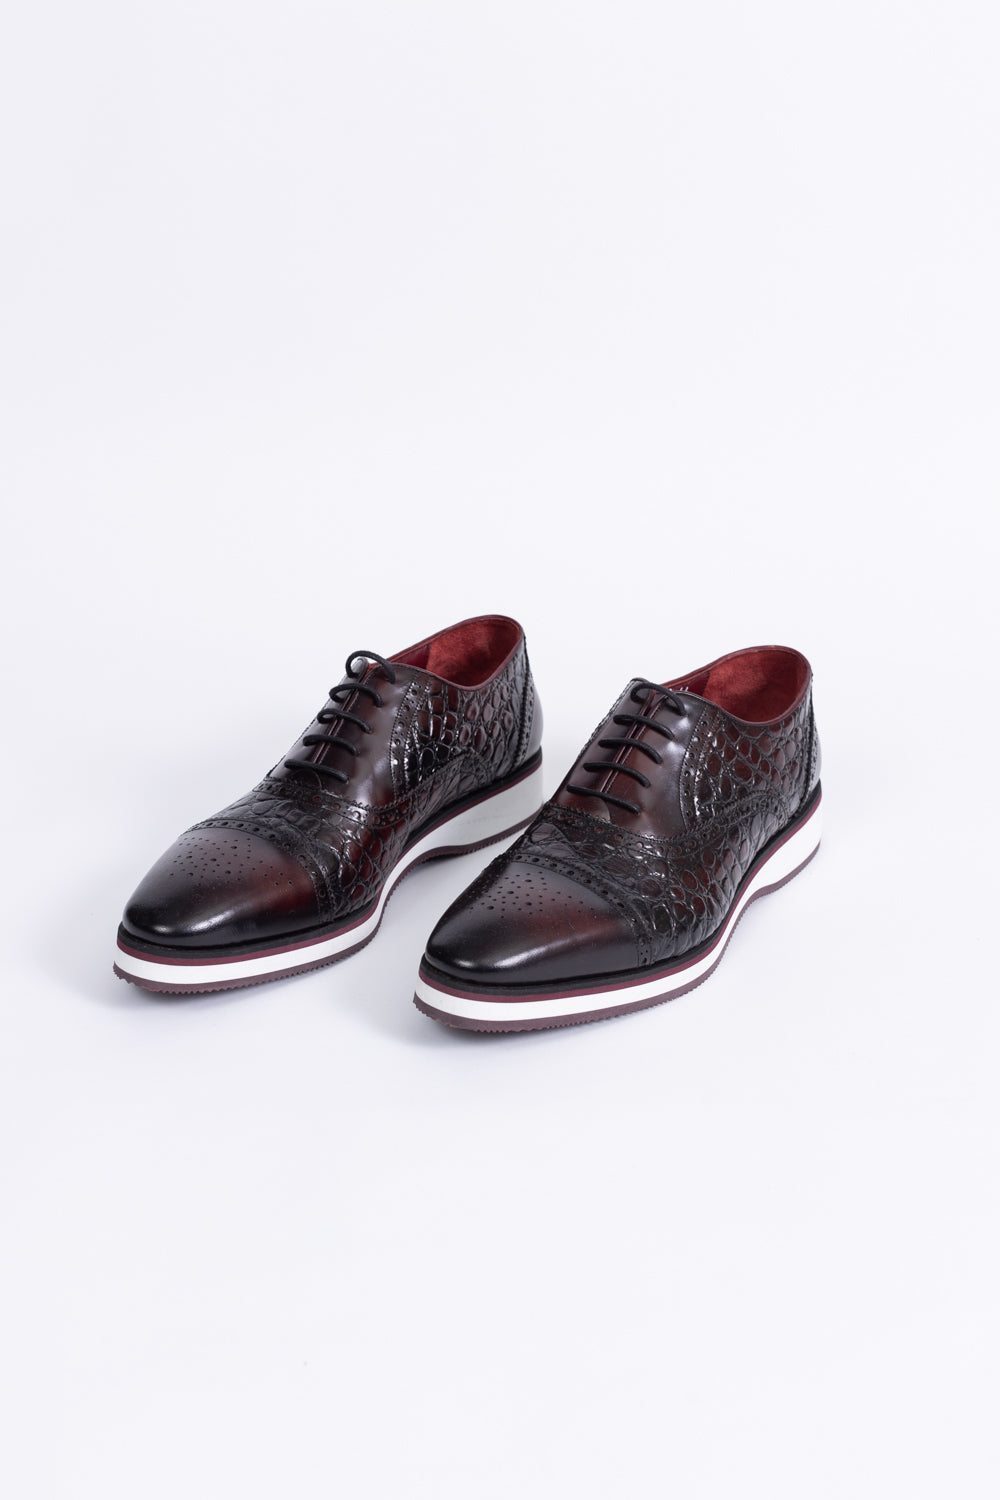 Bordeaux Casual Leather Shoes 902